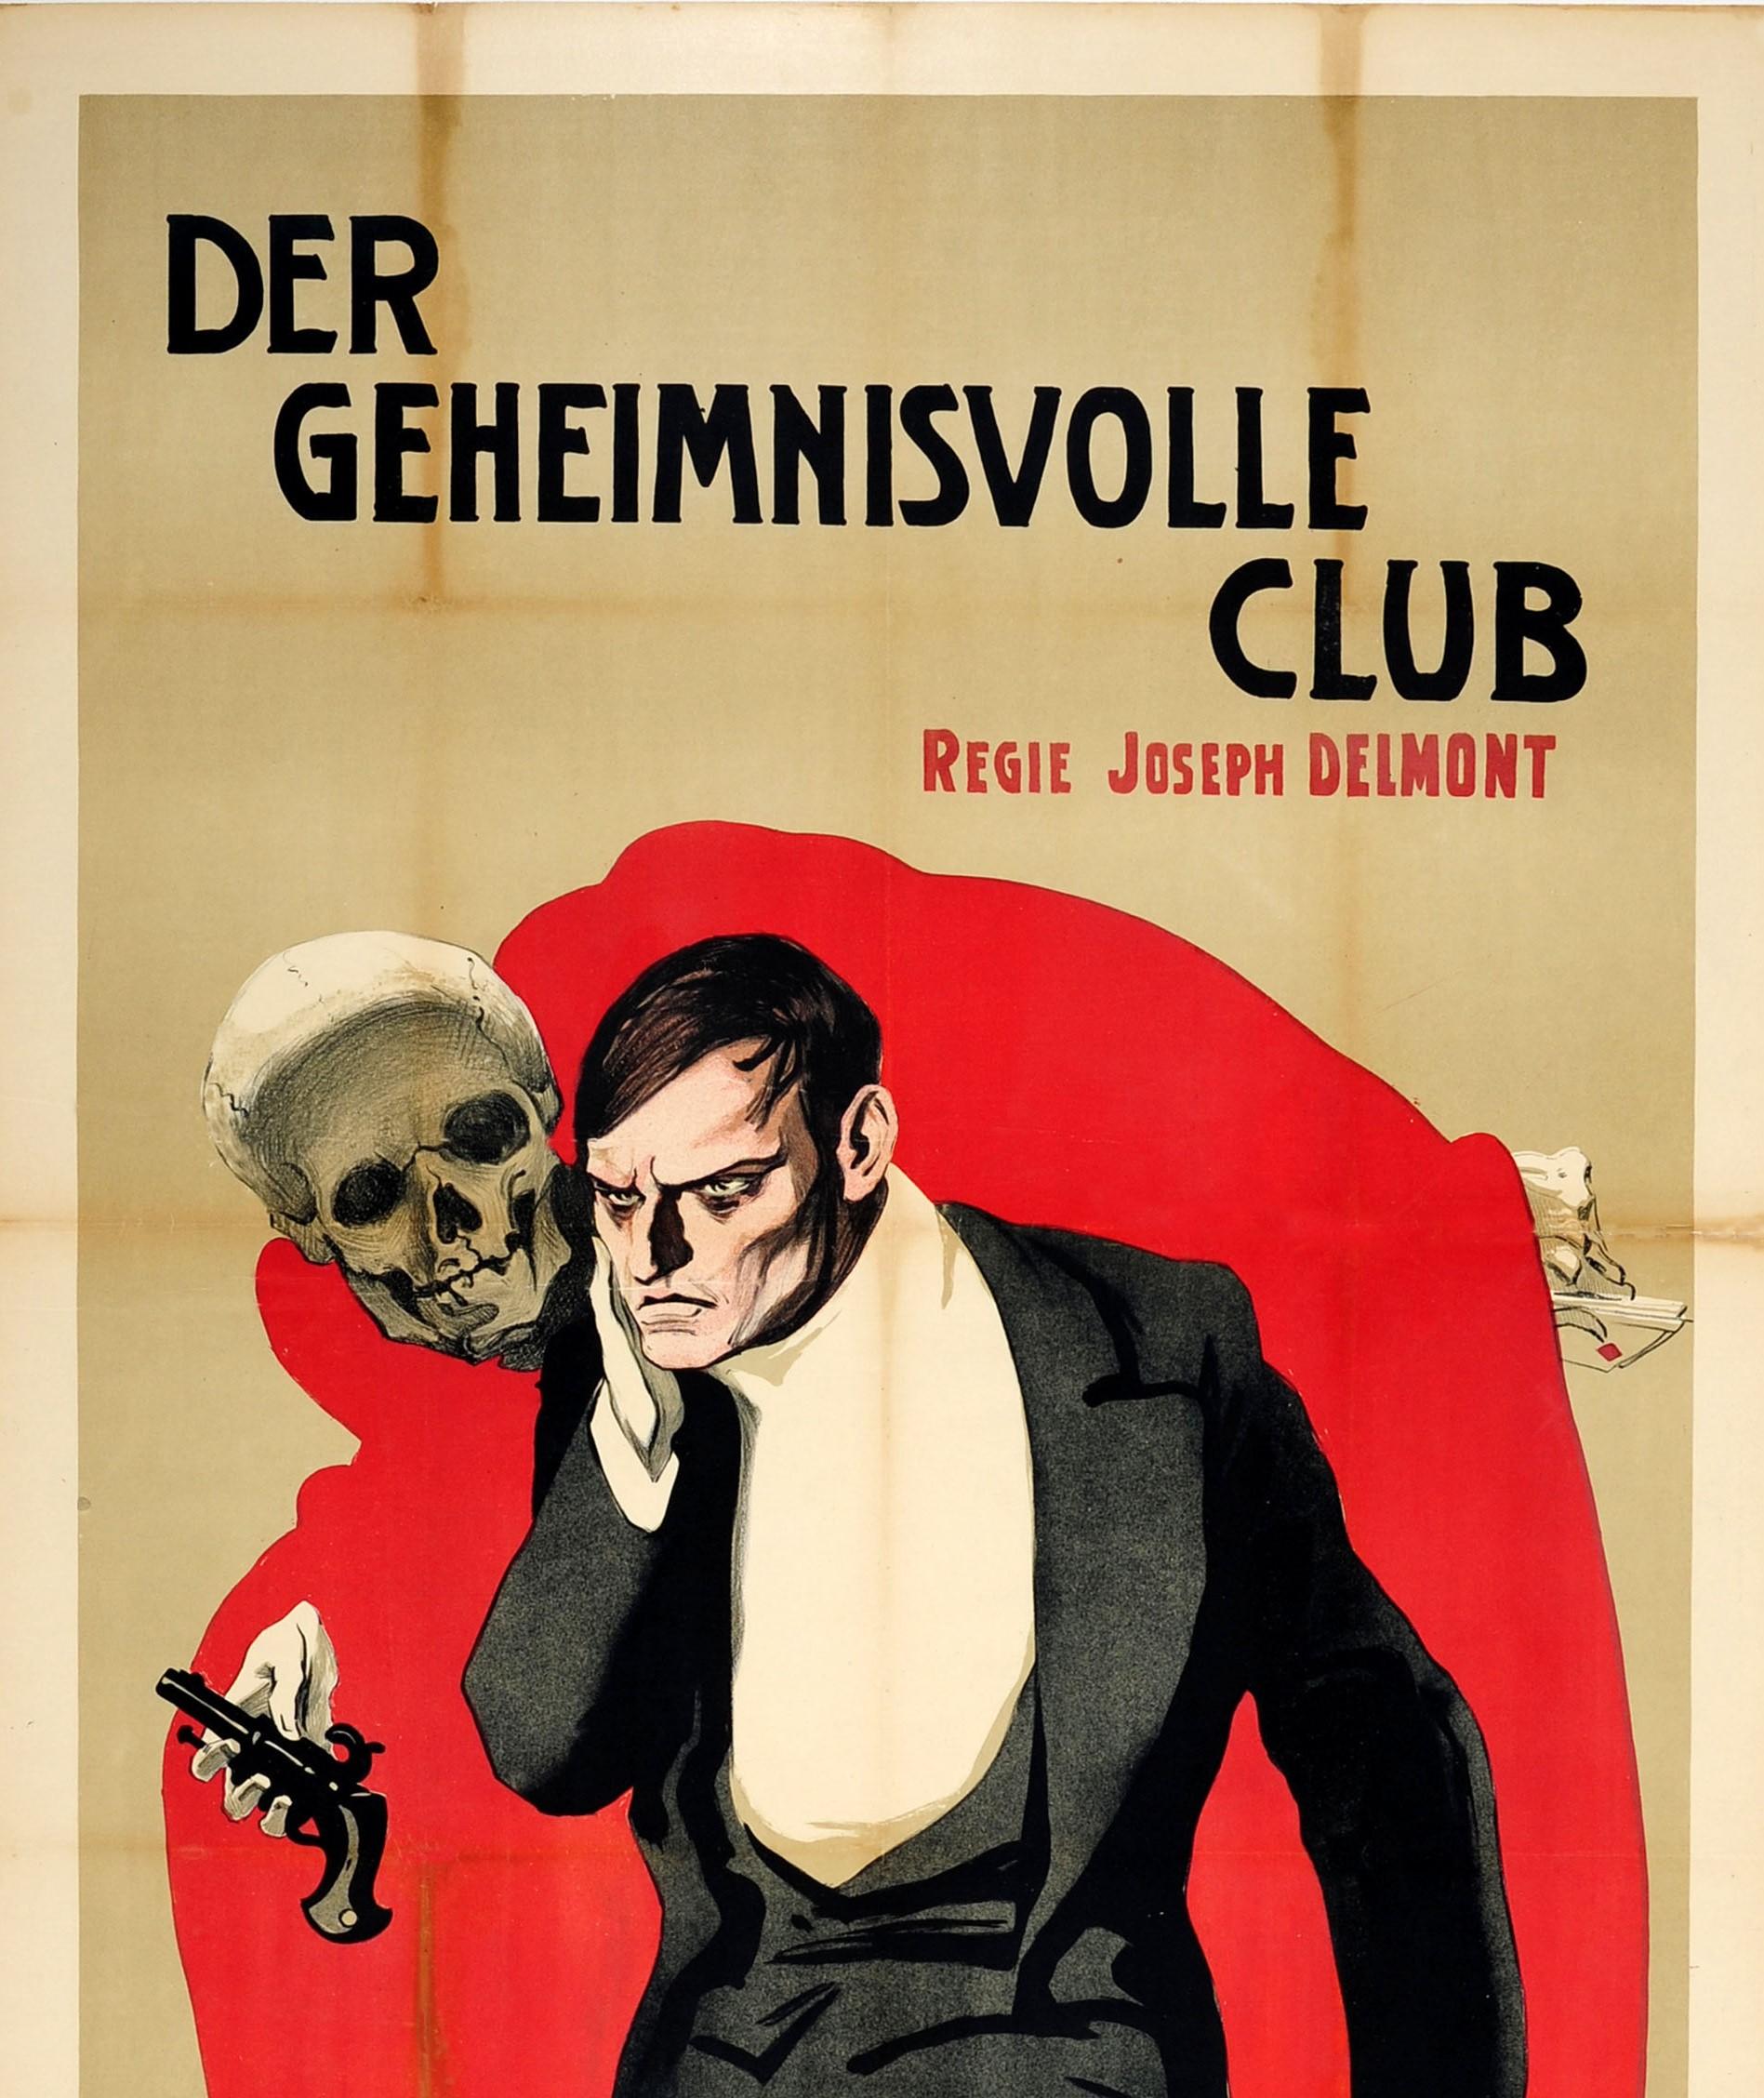 Affiche ancienne originale pour un film - Der Geheimnisvolle Club / The Mysterious Club - basé sur le livre de 1896 